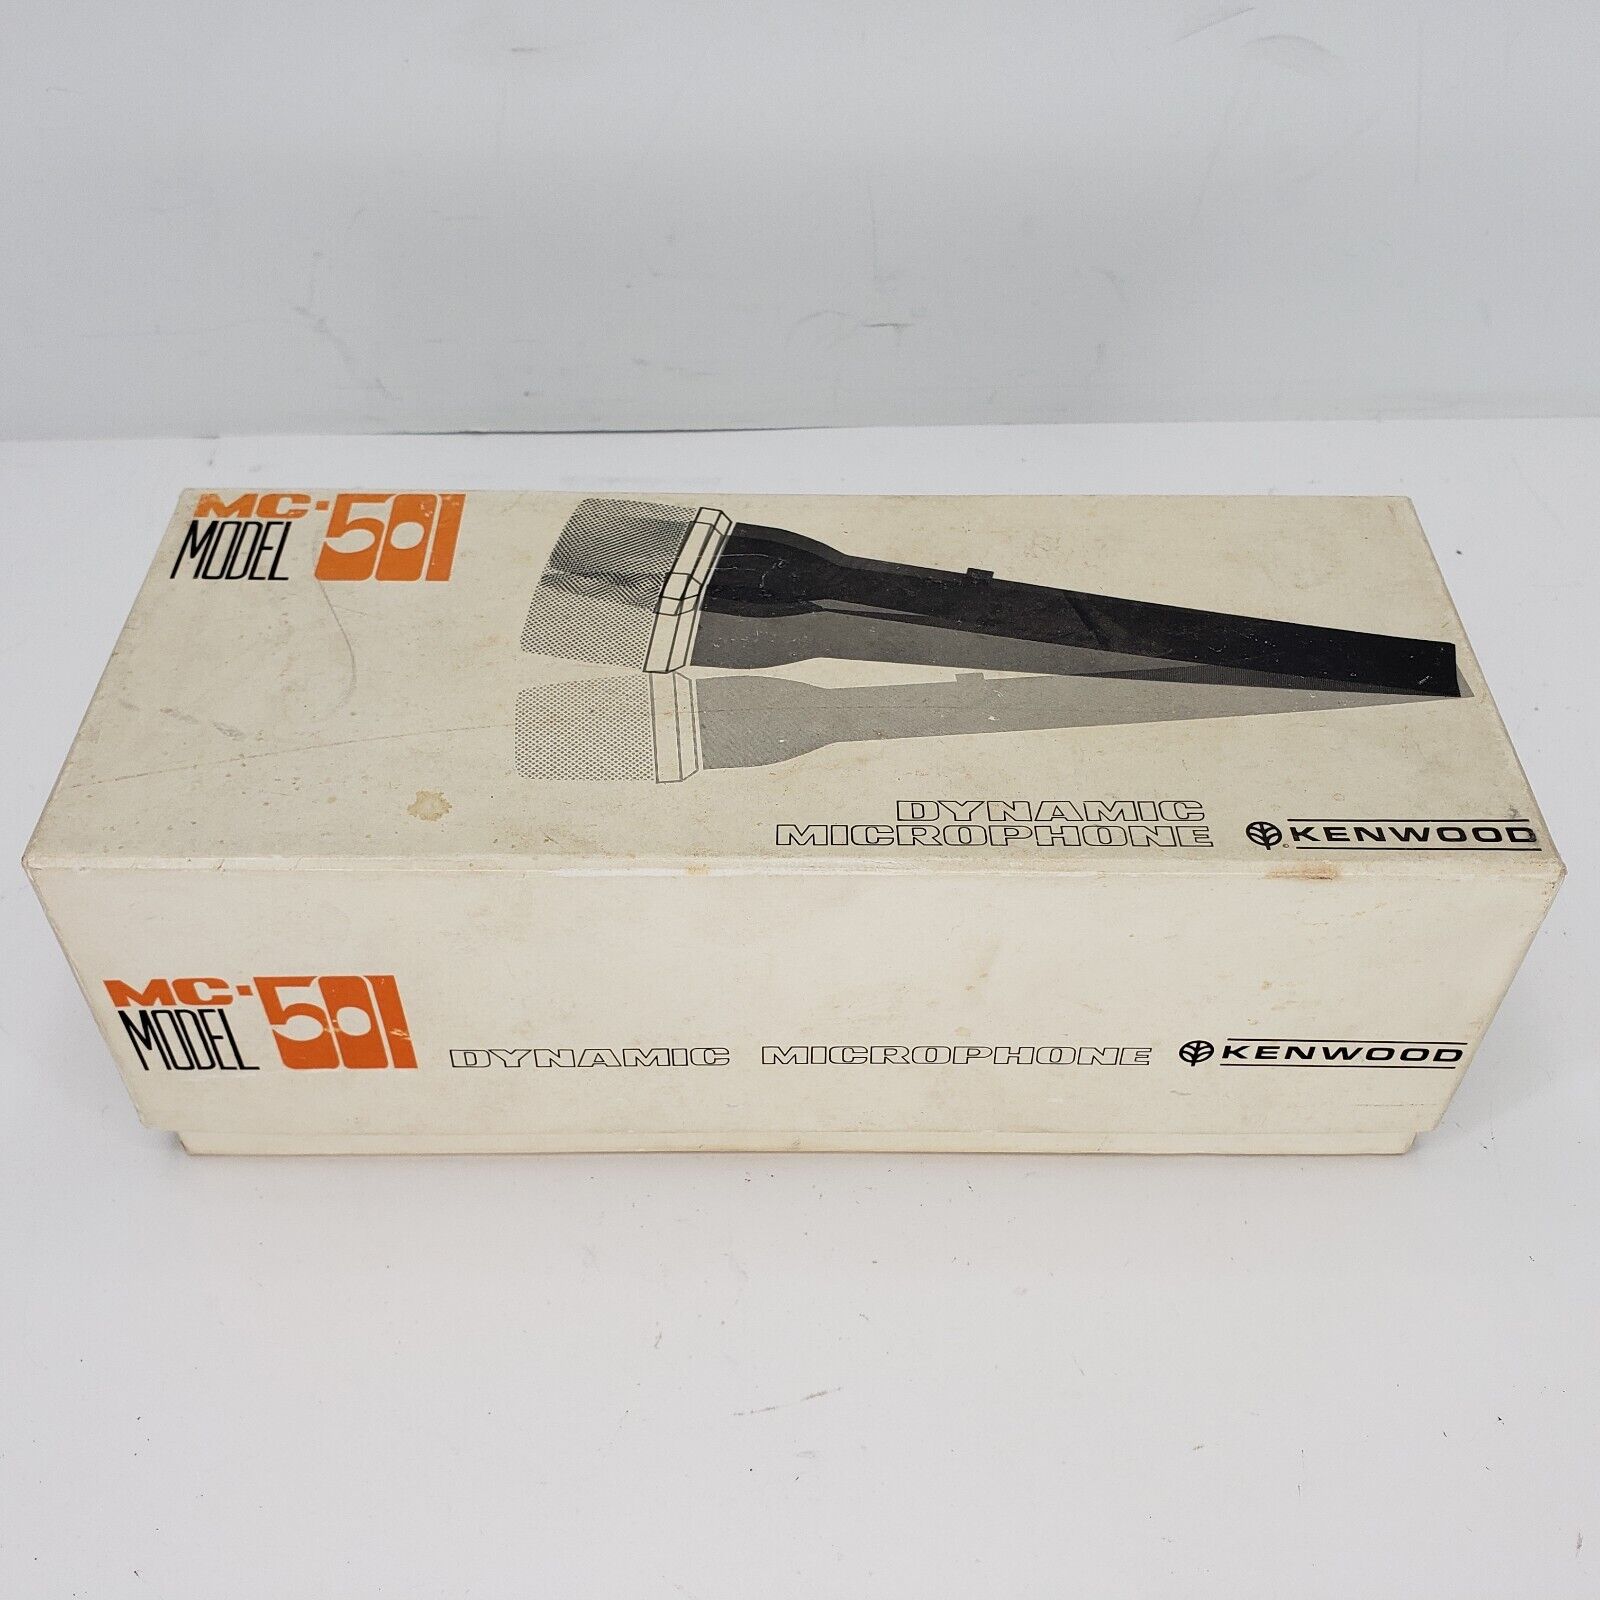 Vintage Kenwood Dynamic Microphone Model MC-501 in Original Box Complete Reel 